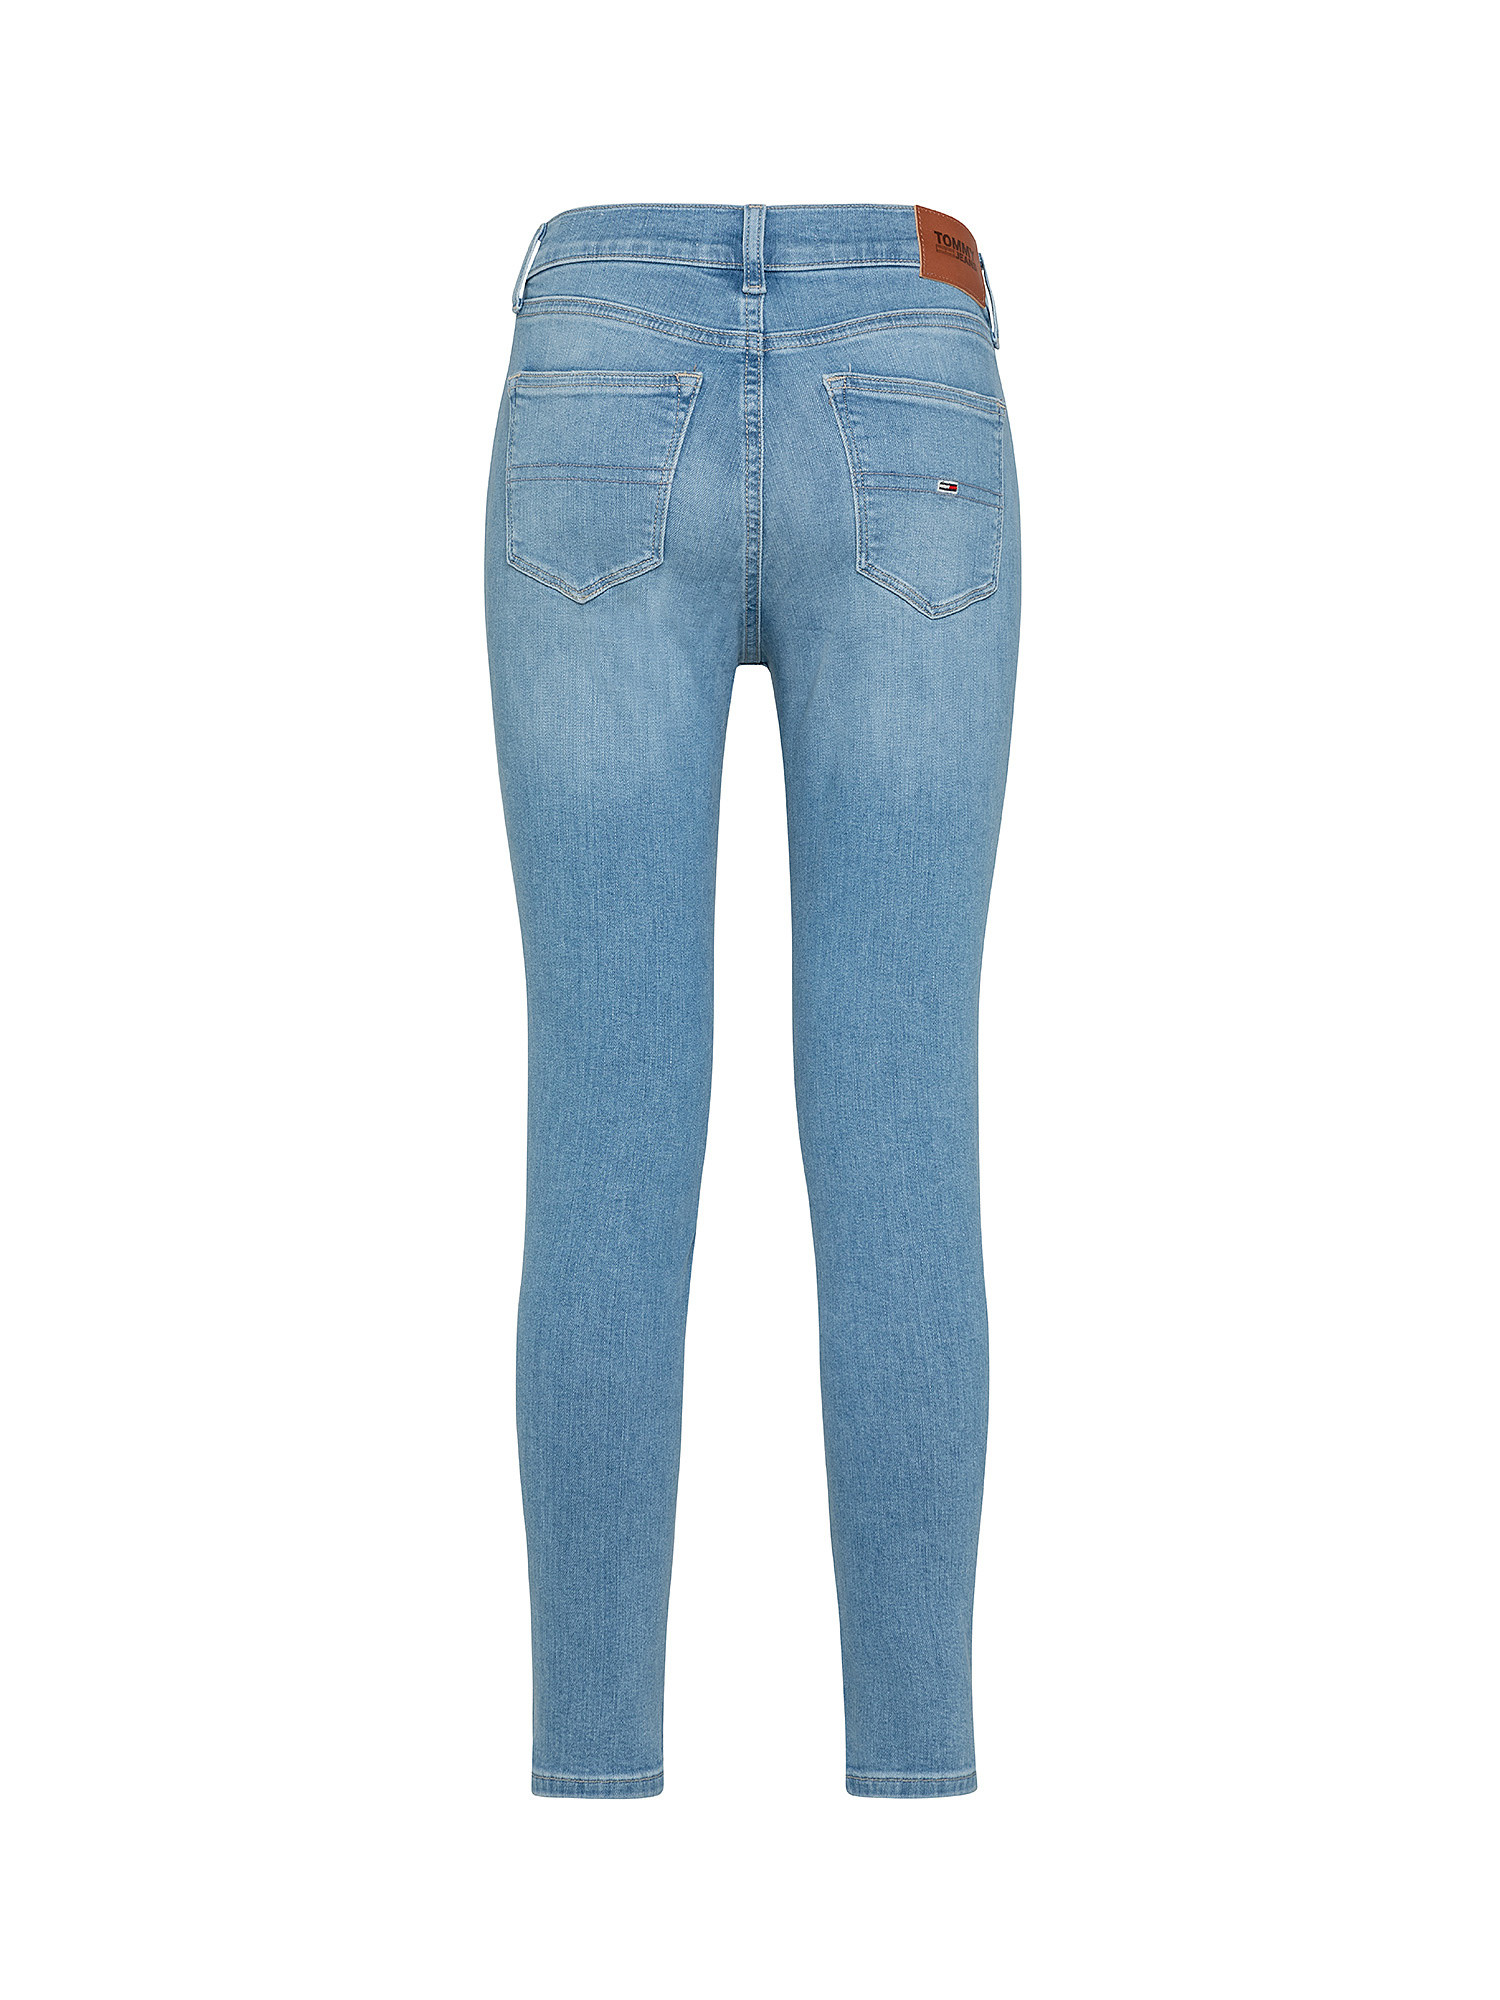 Jeans Nora Skinny fit, Denim, large image number 1